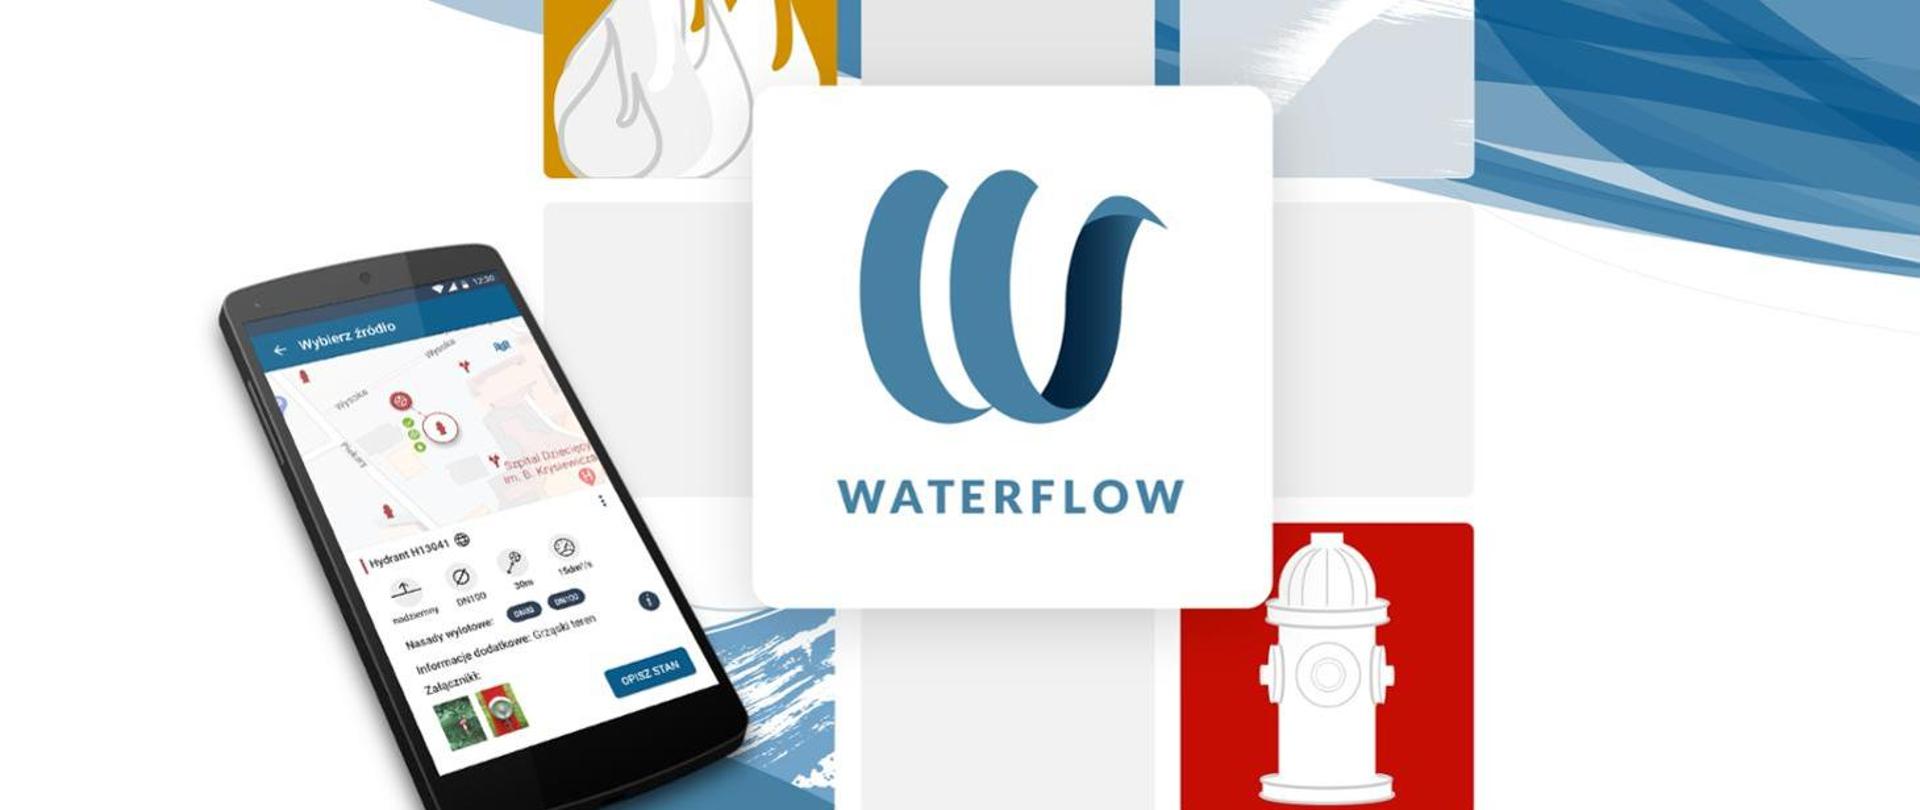 Na zdjęciu plakat aplikacji waterflow. telefon, piktogram aplikacji waterflow oraz piktogram hydrantu